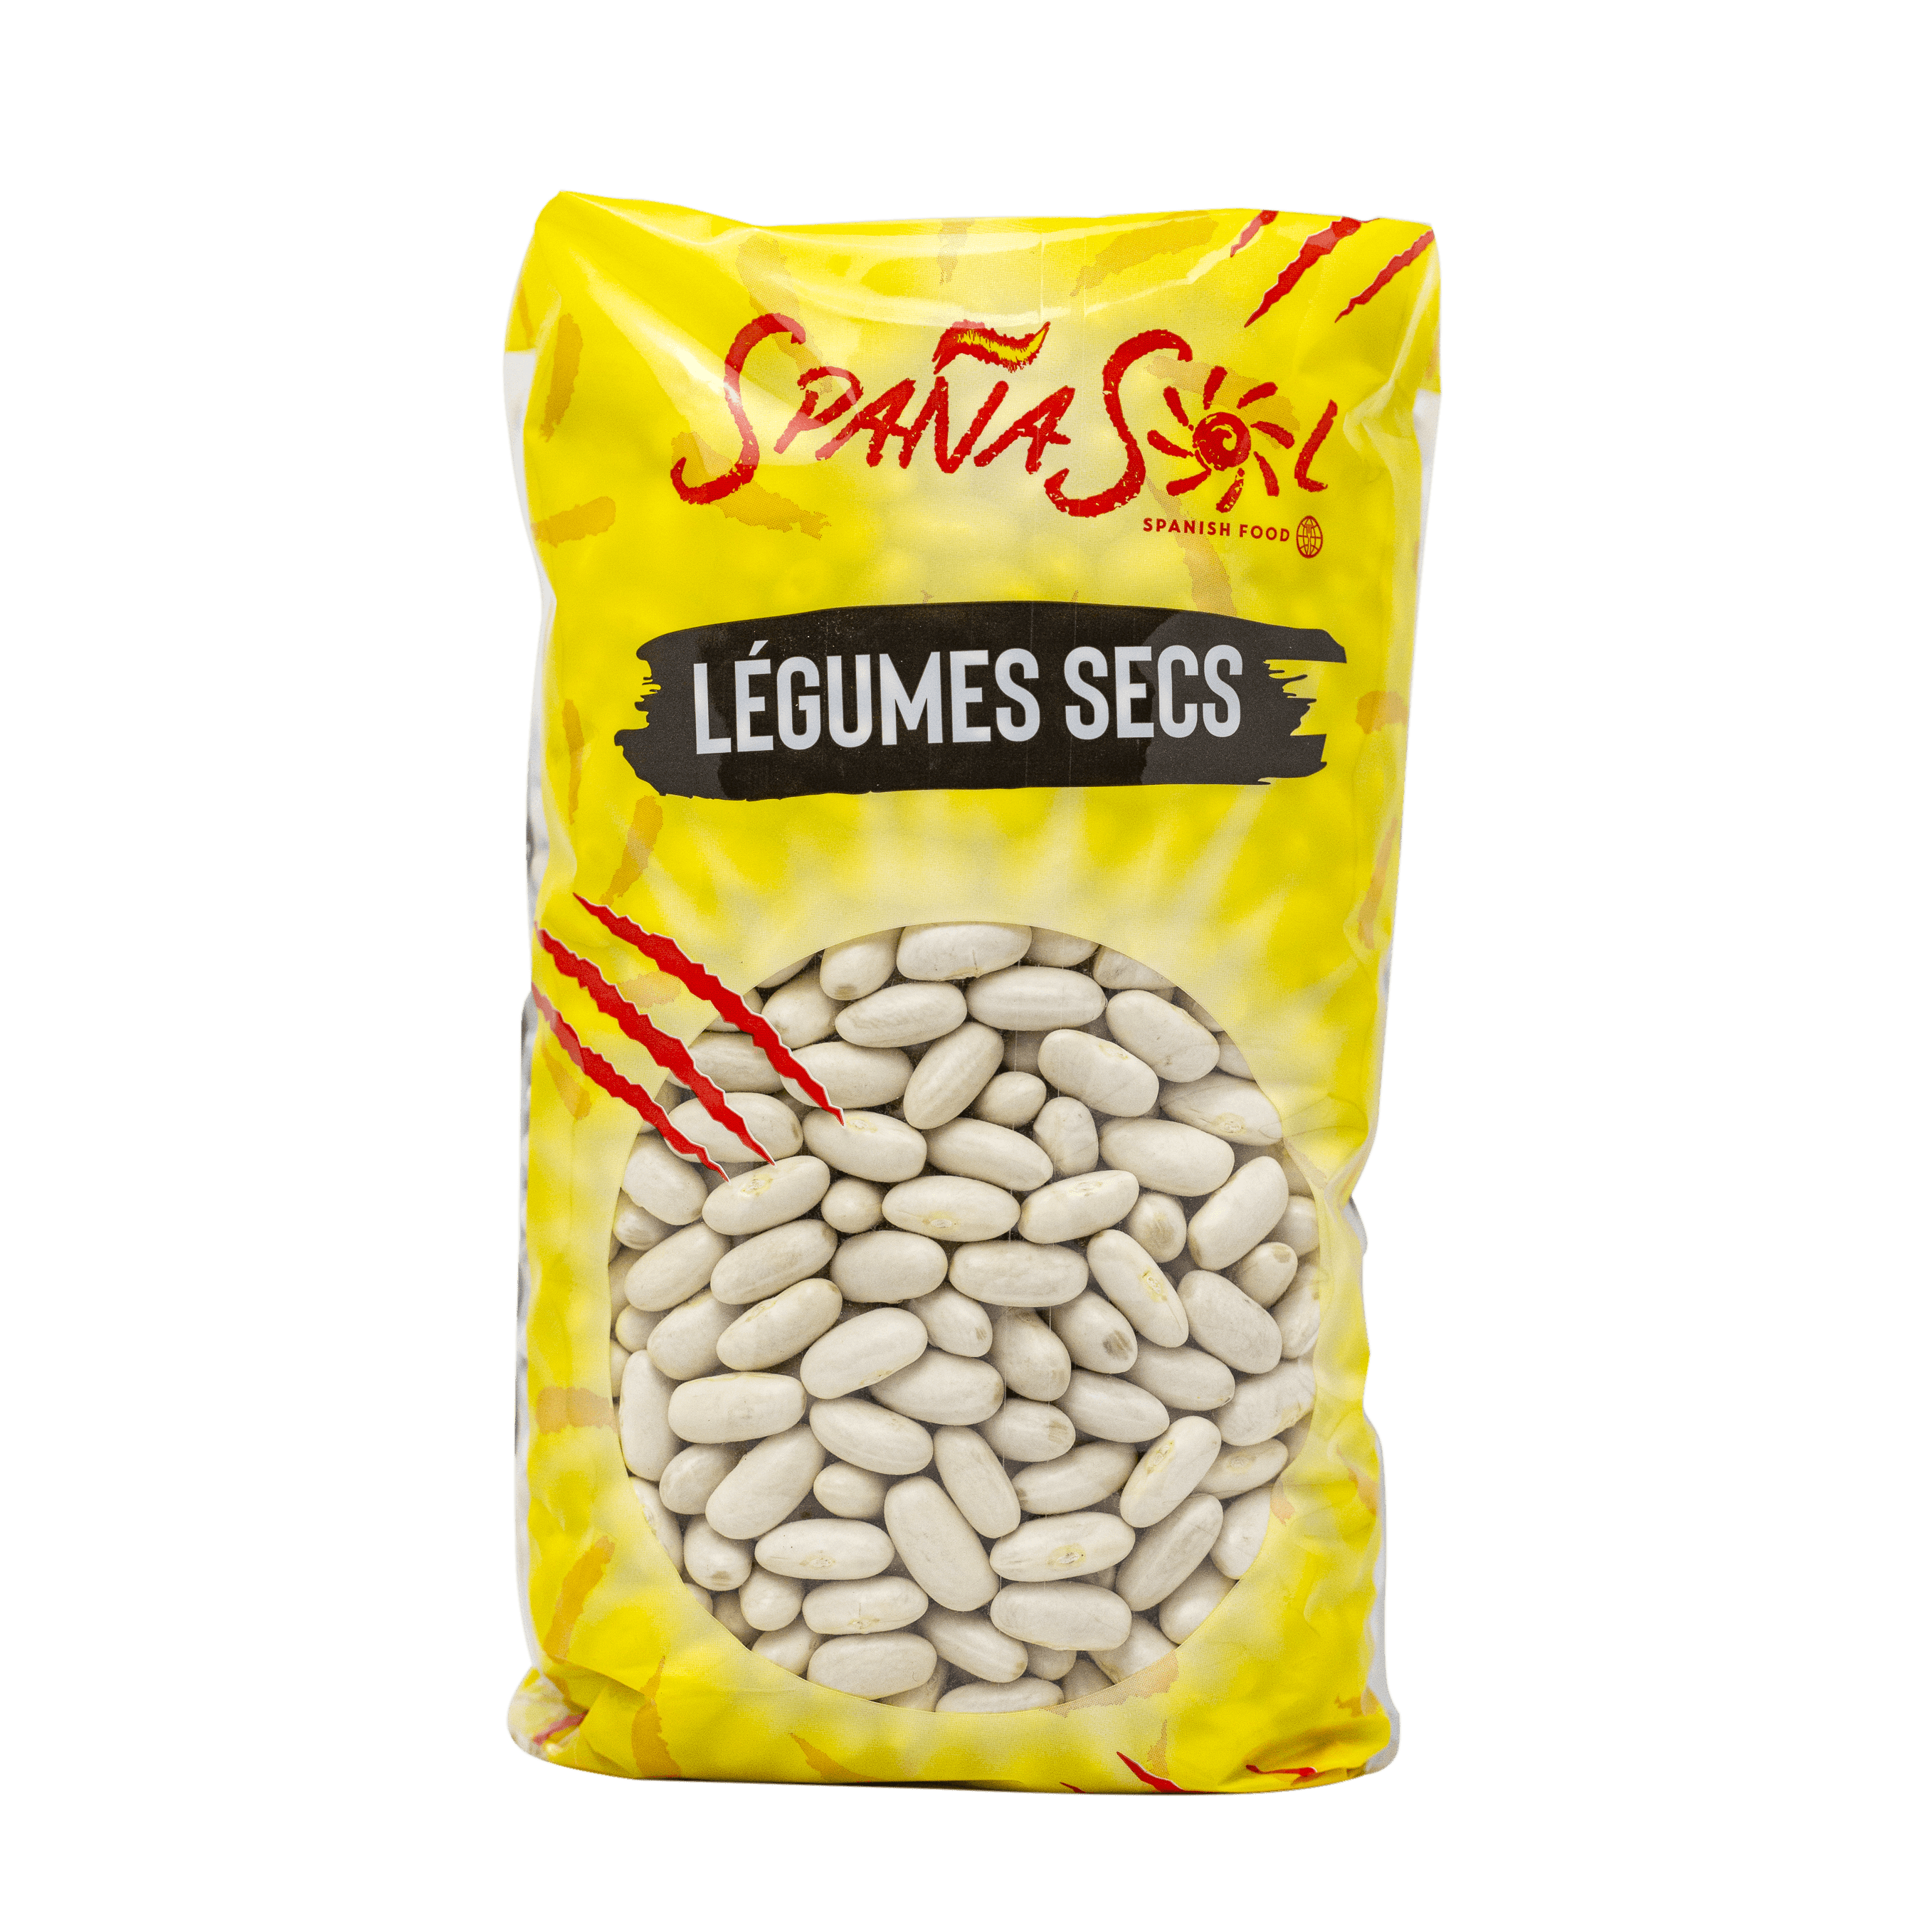 produits espagnols haricots blancs secs spanasol